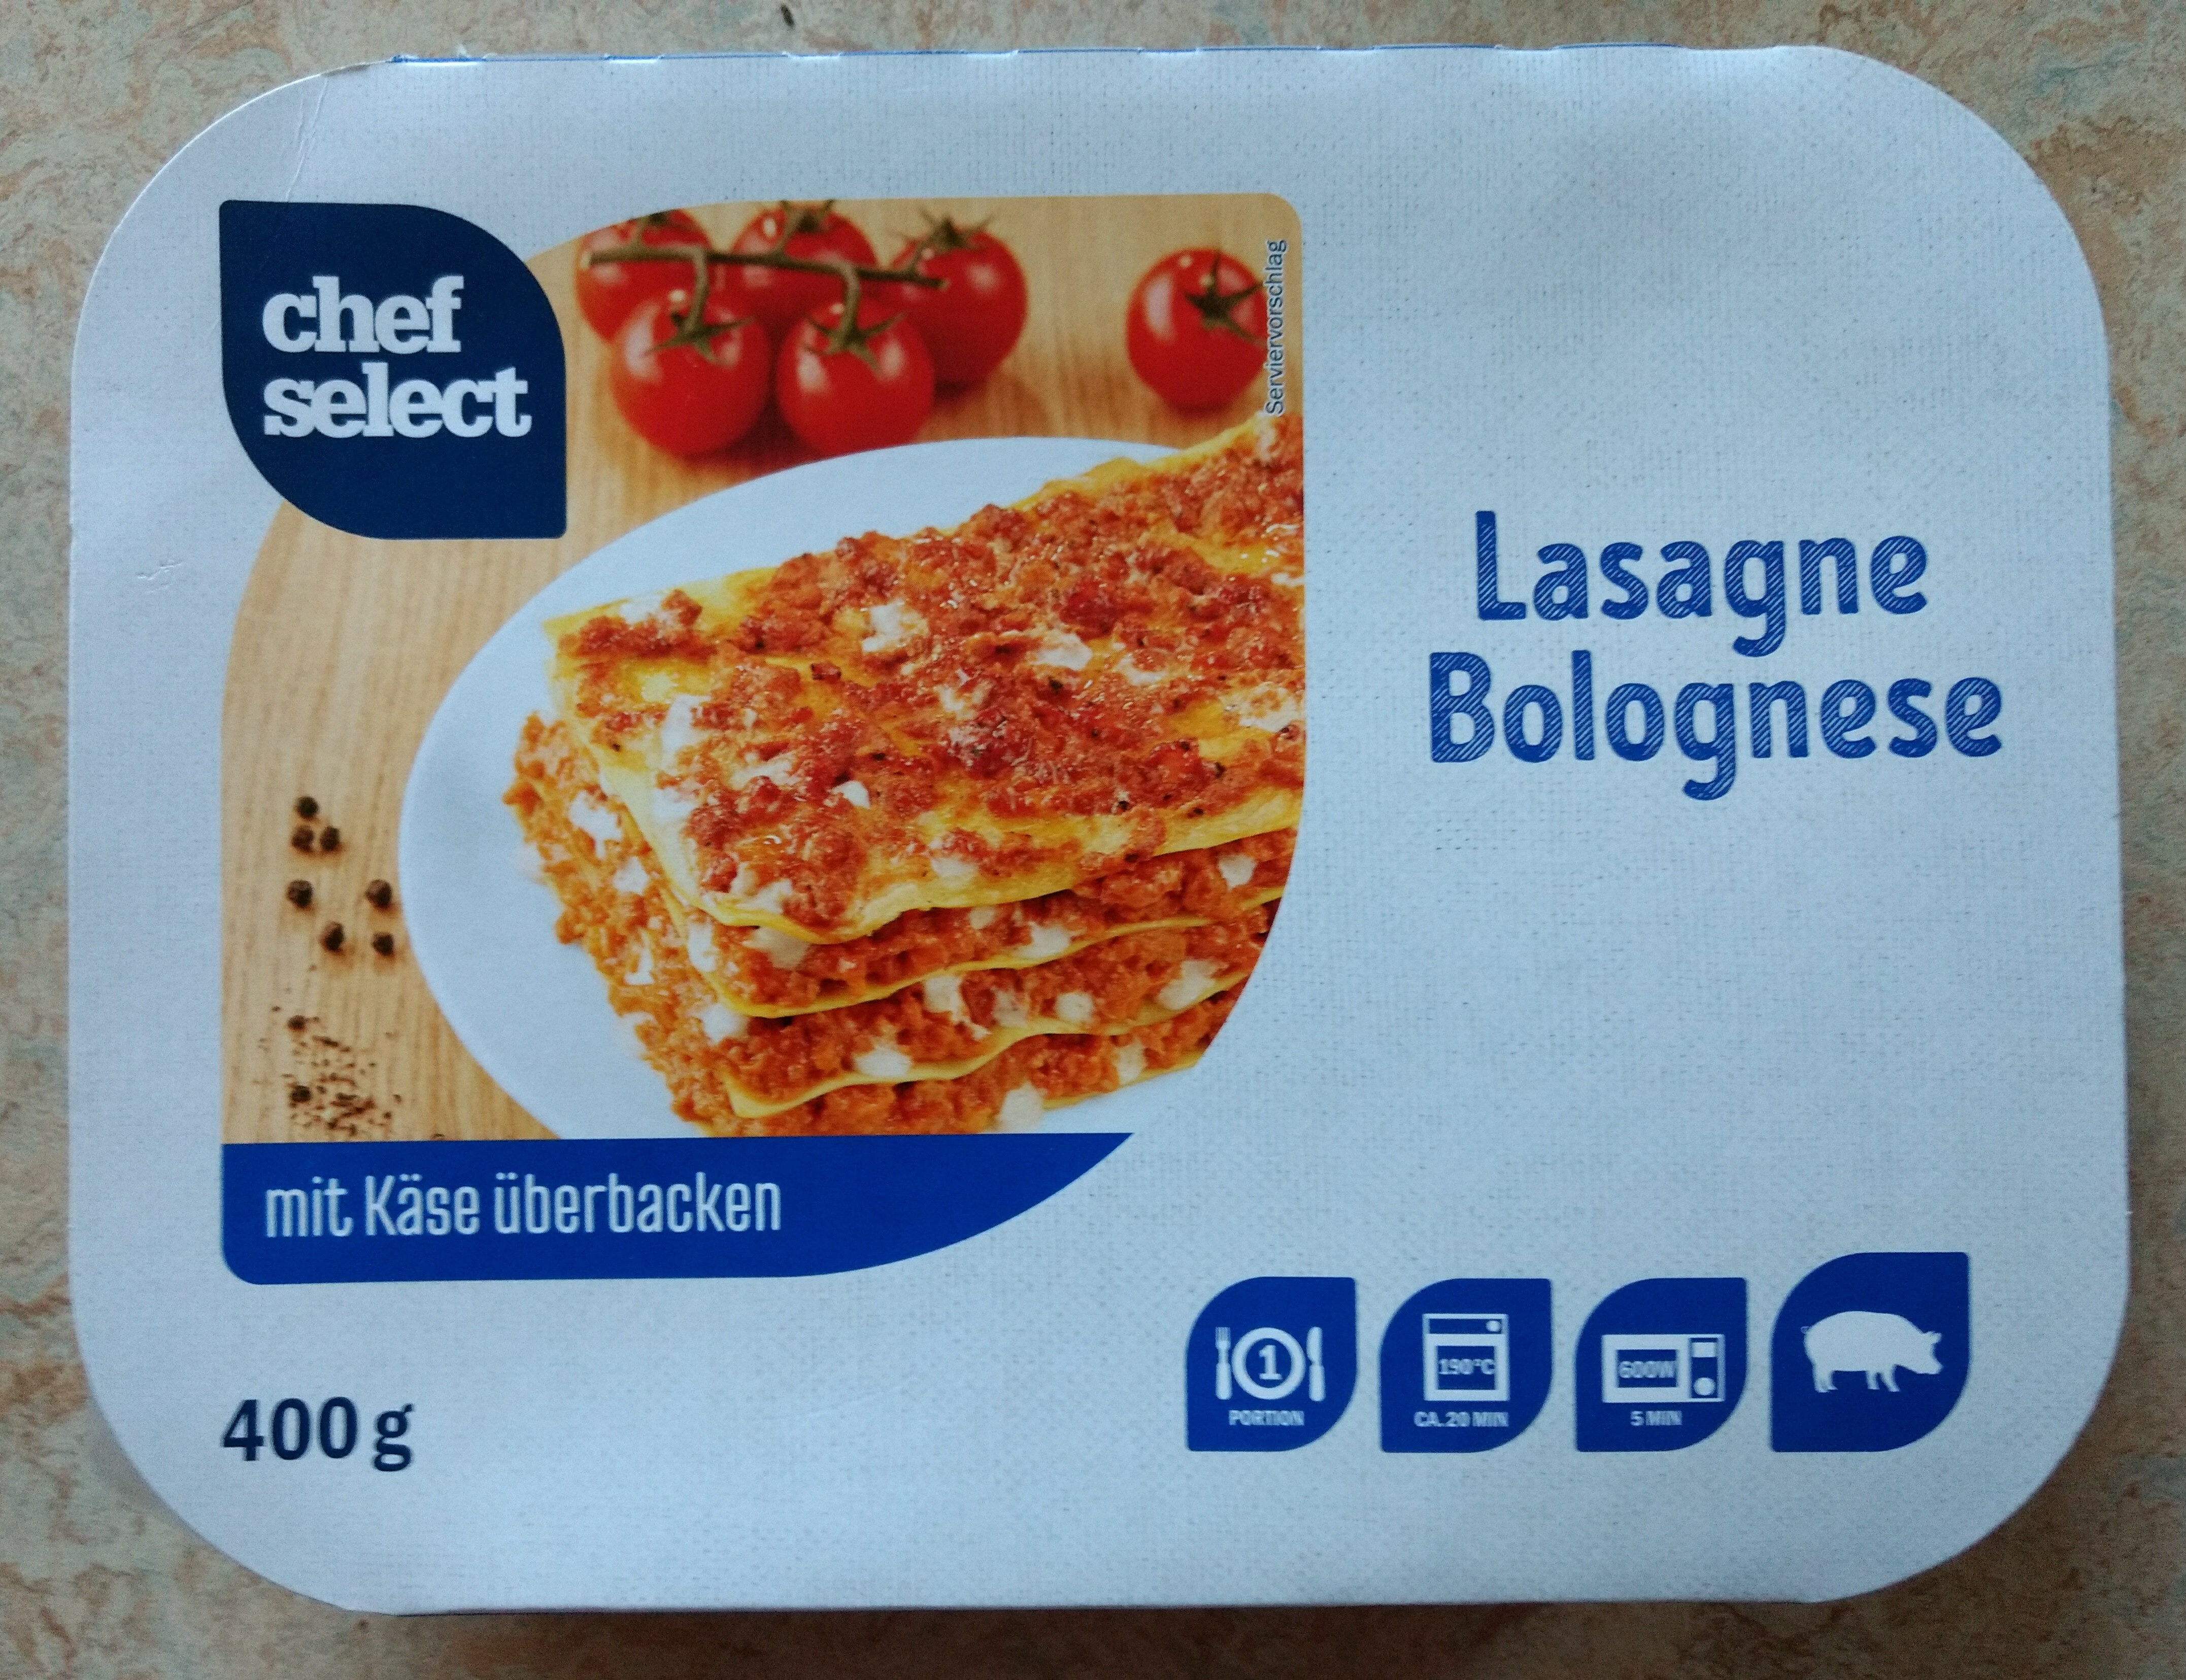 Lasagne Bolognese mit Käse überbacken - Produkt